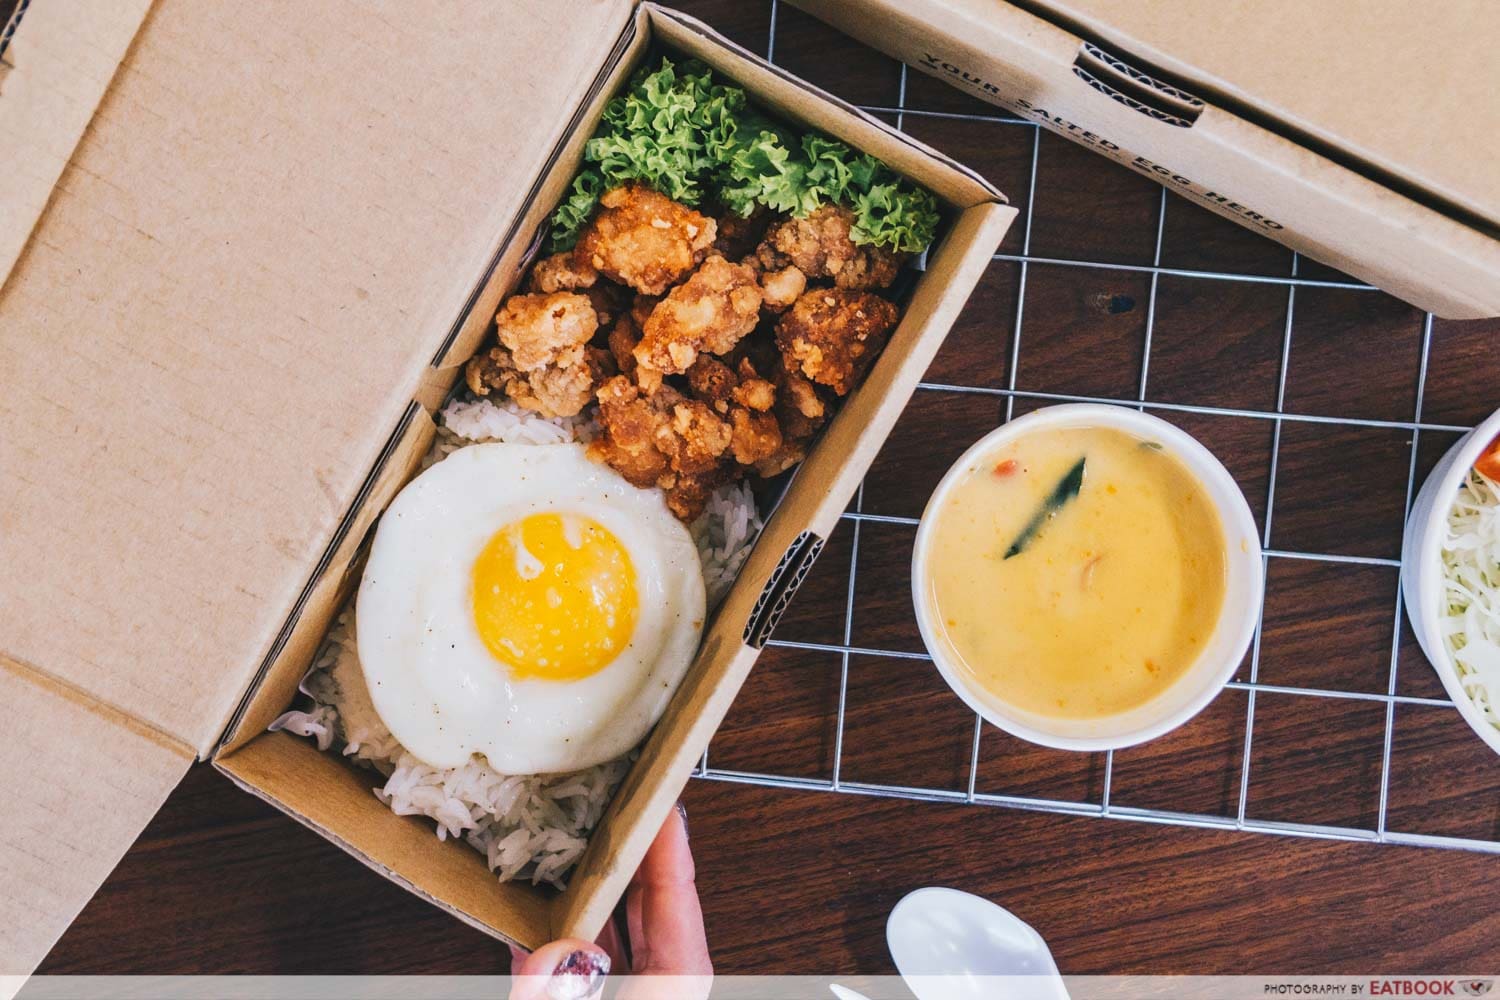 xian dan chao ren - chicken and rice